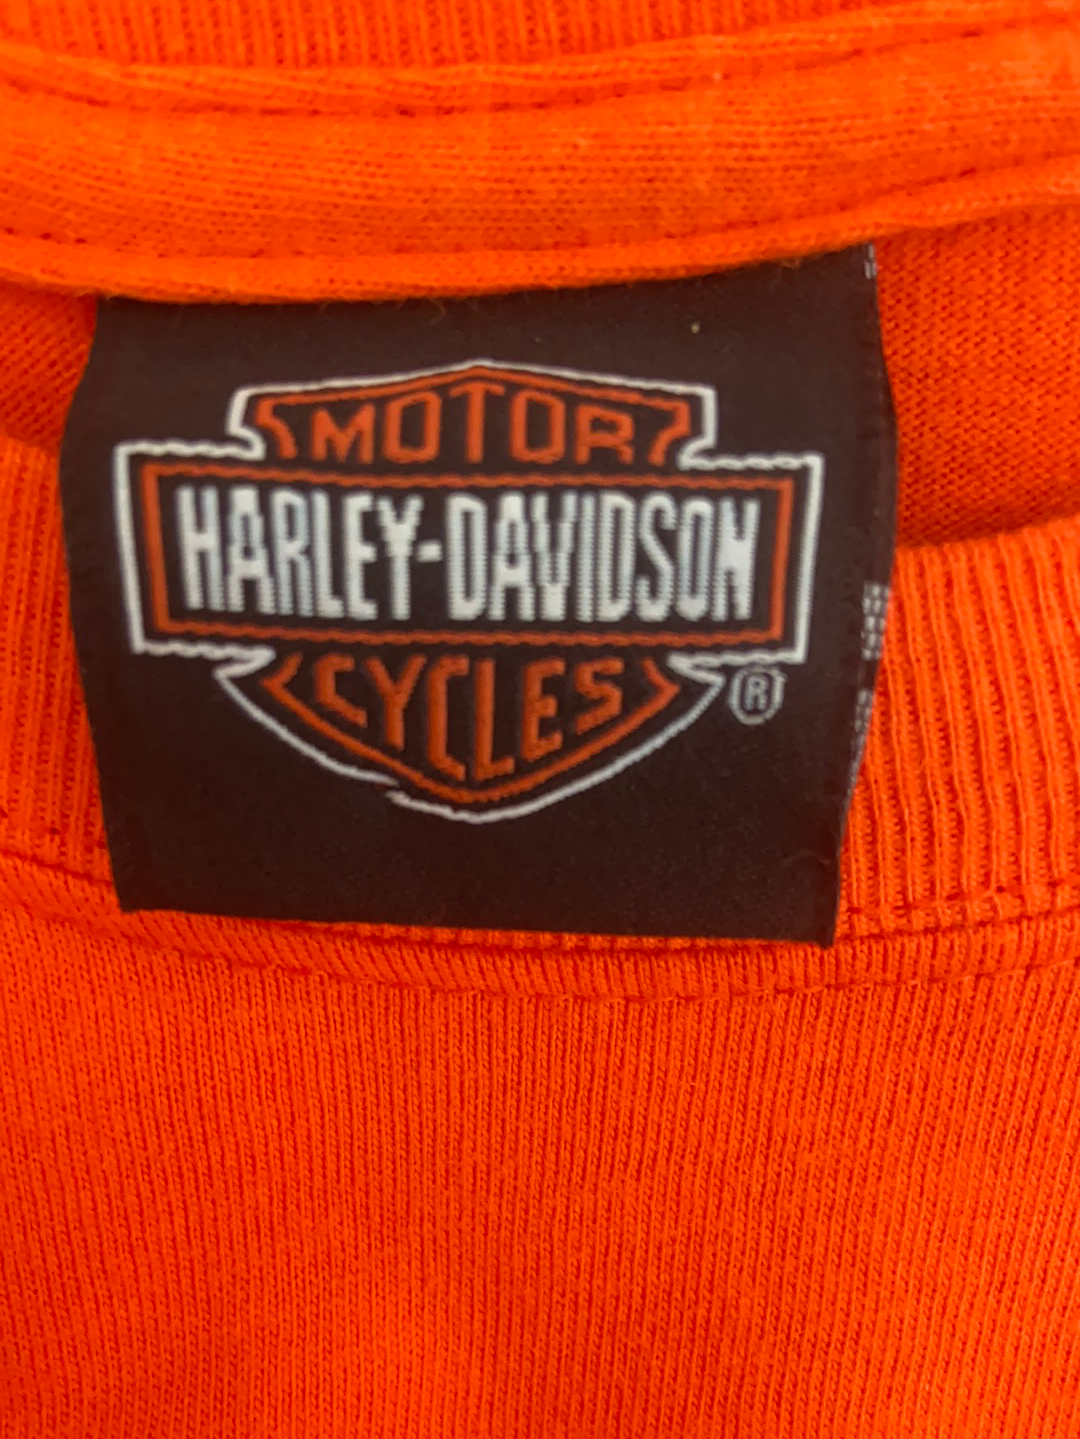 Restyled Harley Davidson Vintage Tee - Large